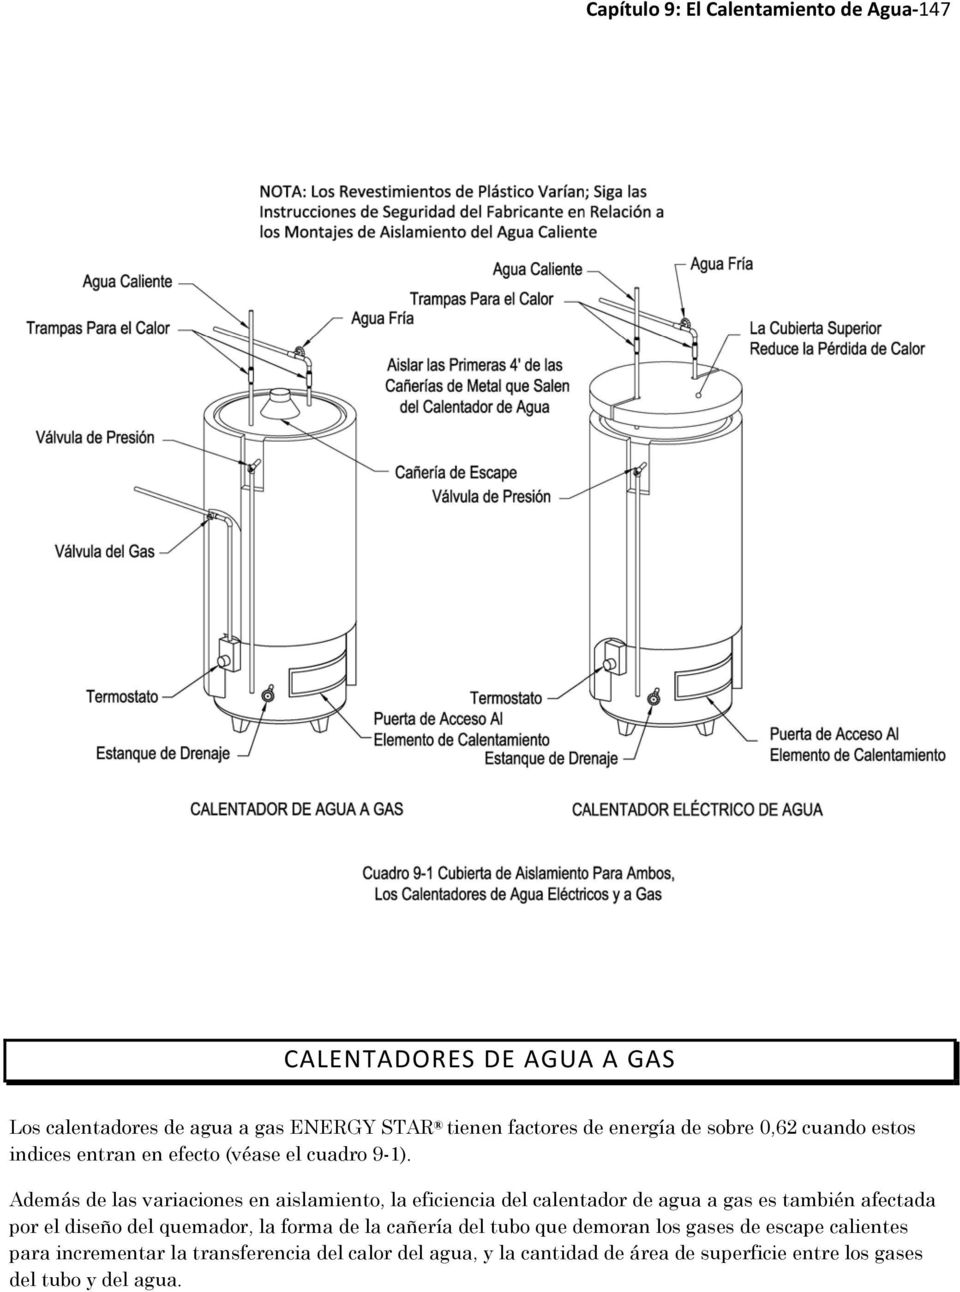 Además de las variaciones en aislamiento, la eficiencia del calentador de agua a gas es también afectada por el diseño del quemador, la